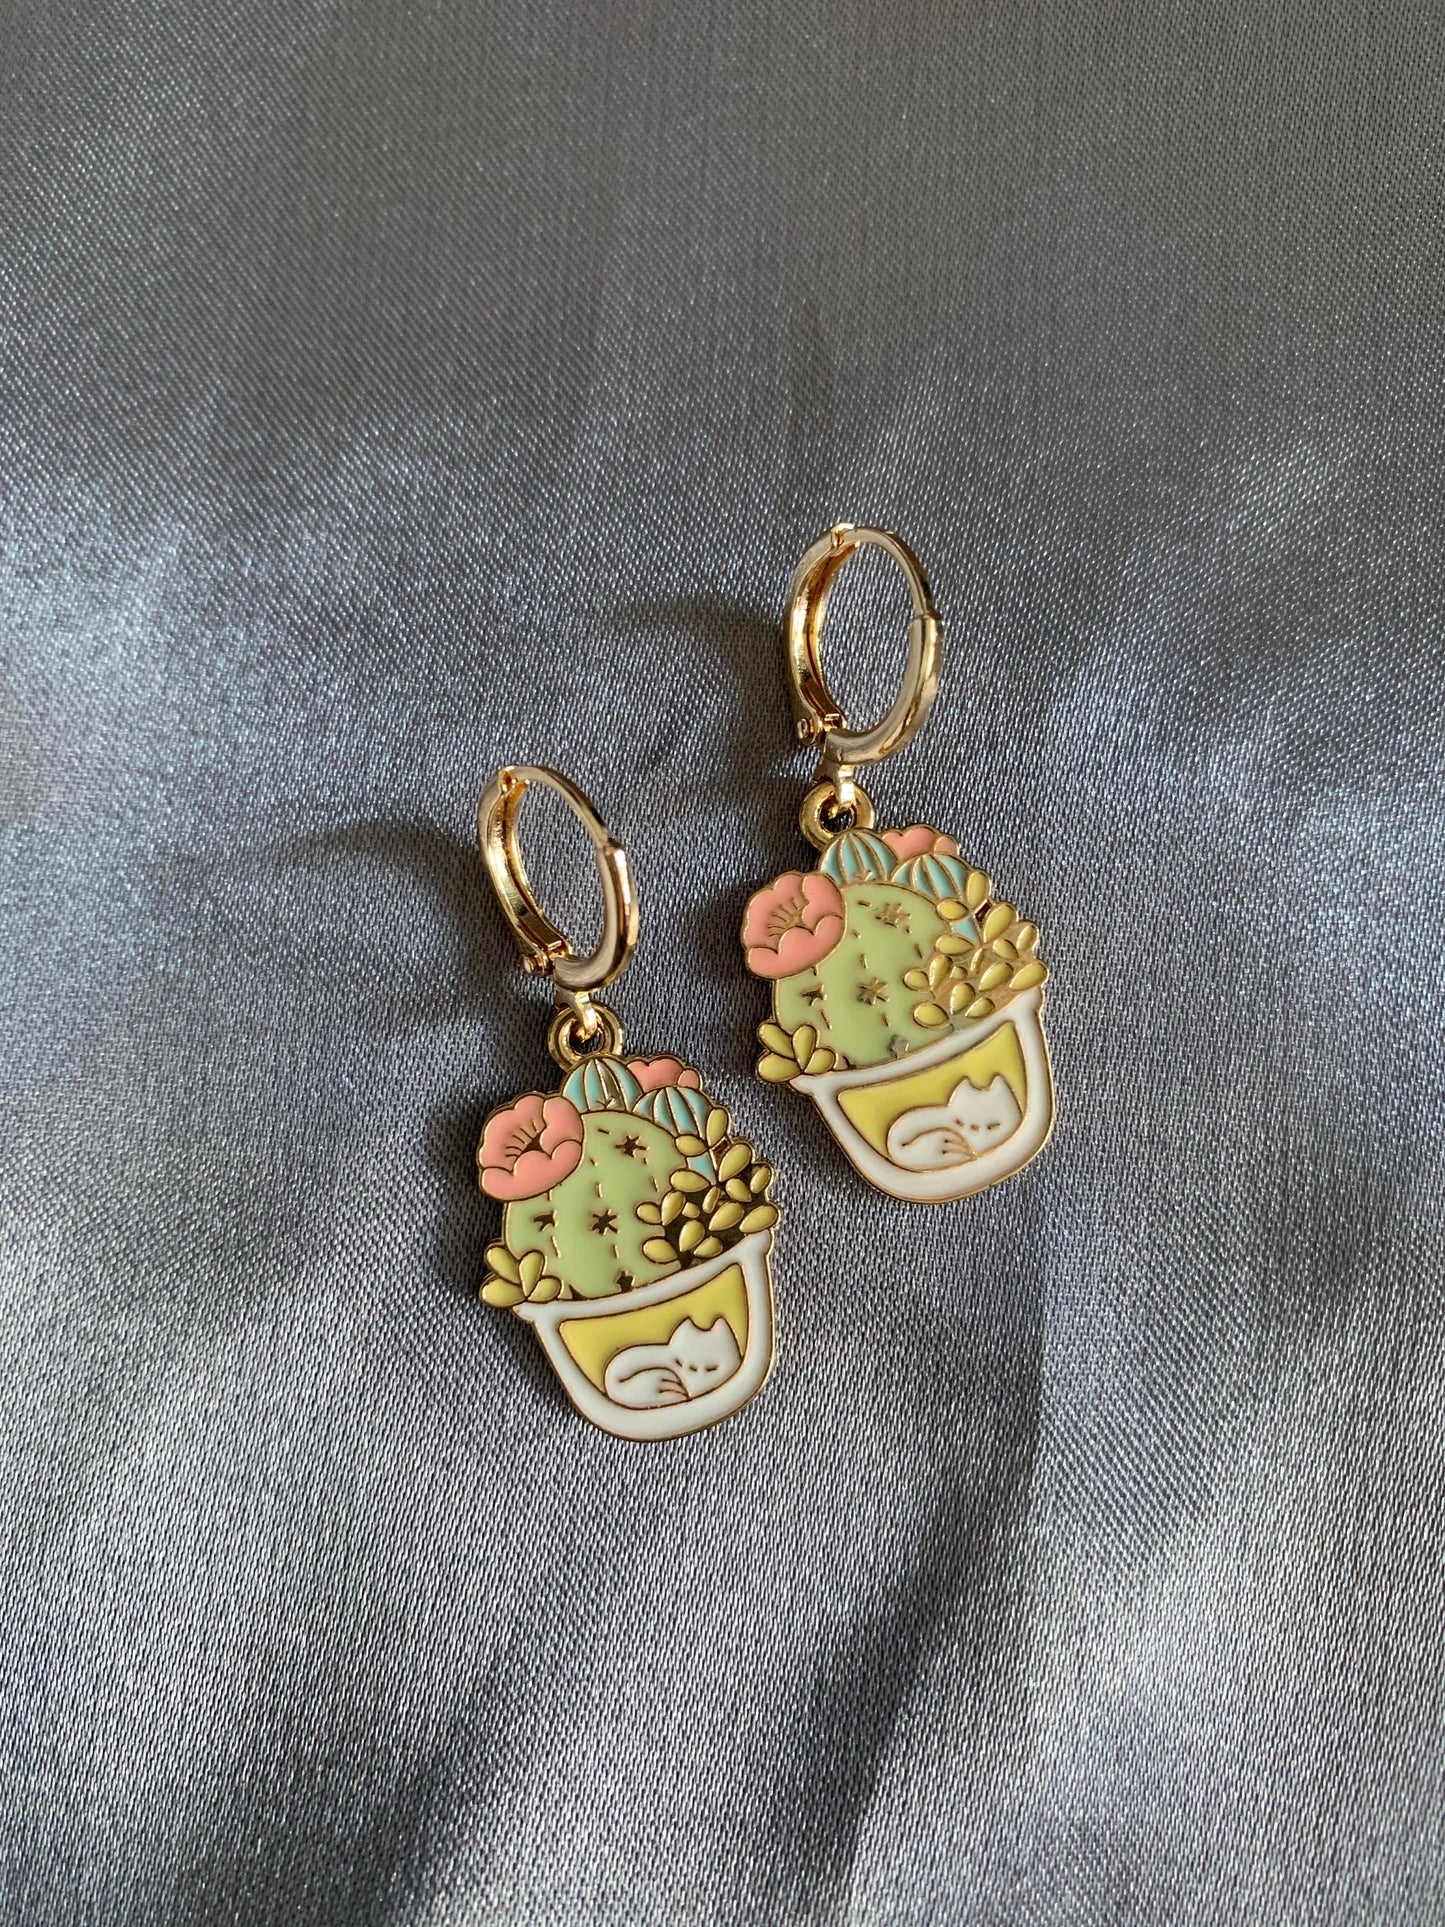 Unique Cat and Cactus Huggie Earrings